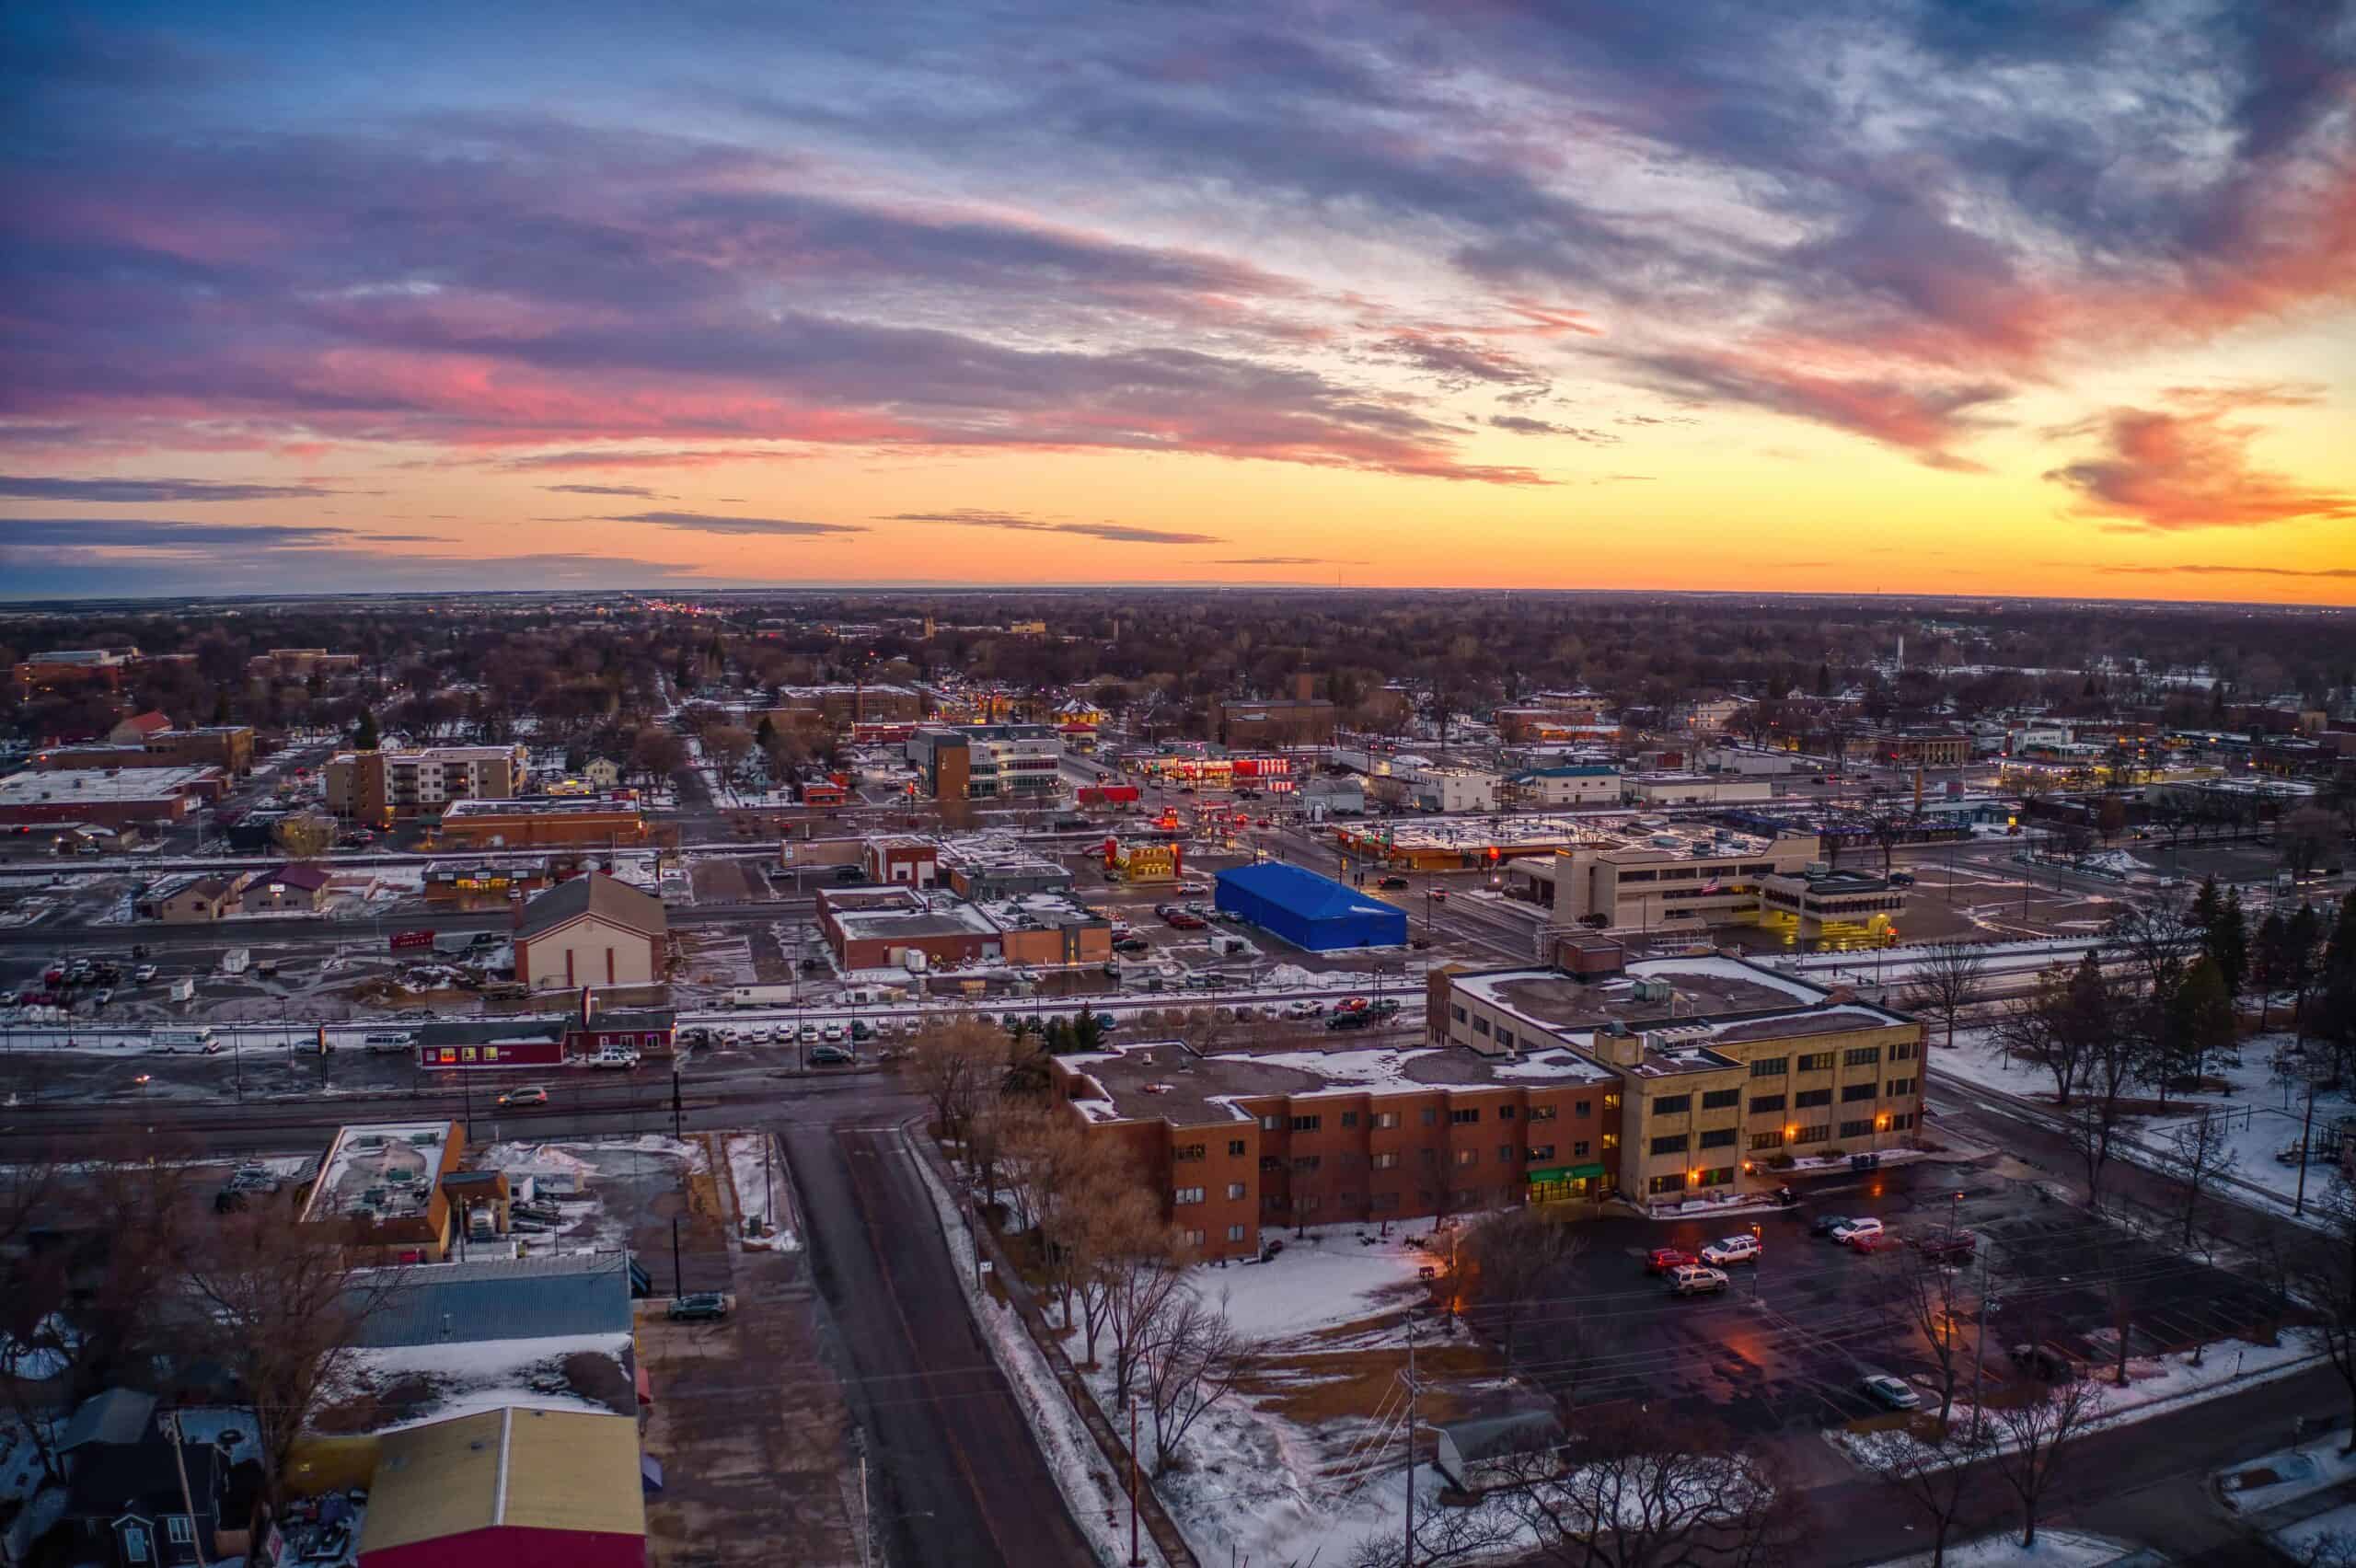 Moorhead, Minnesota | Aerial View of Downtown Moorhead, Minnesota at Dusk